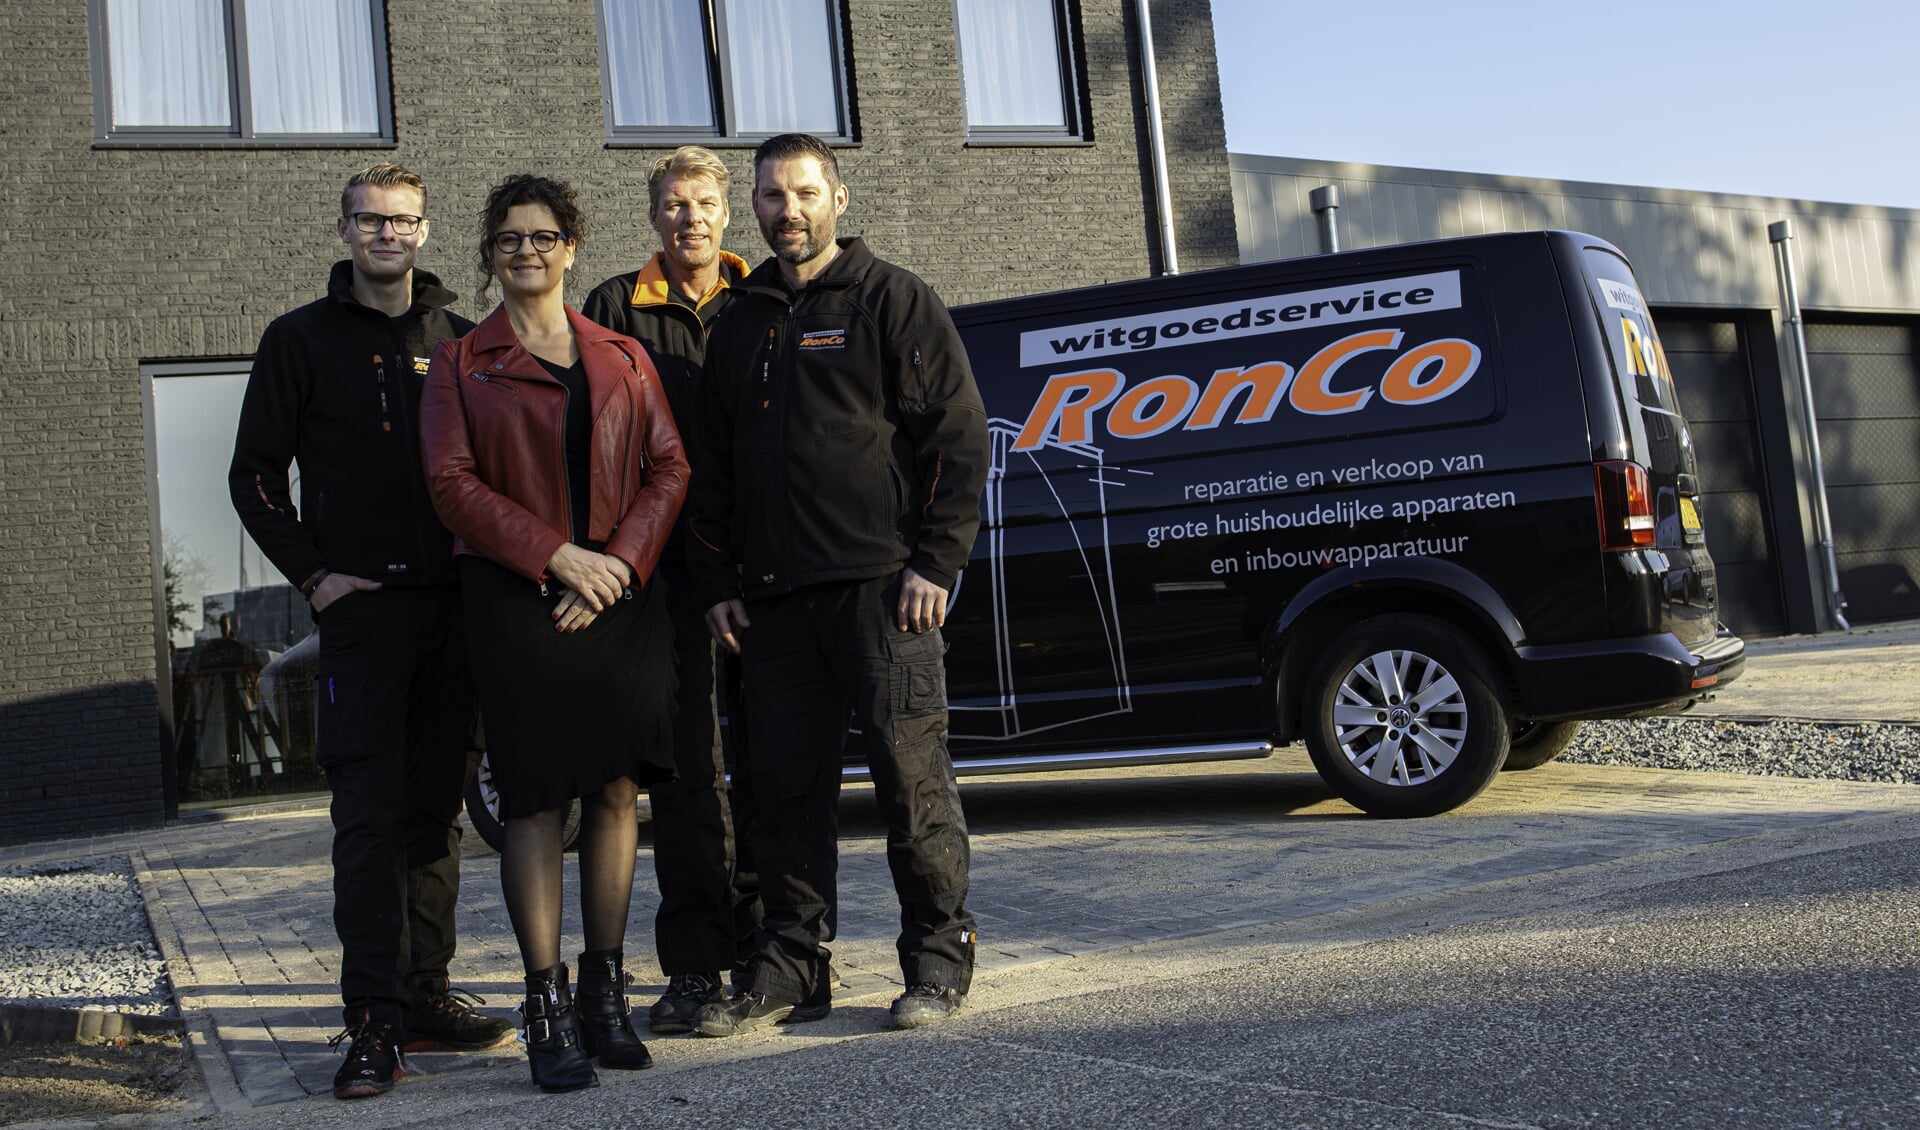 Witgoedservice RonCo viert het 15-jarig bestaan. Op de foto staan Ronnie Cornelissen, Wim van Silfout, Niek de Koning en Monique Verbiesen.